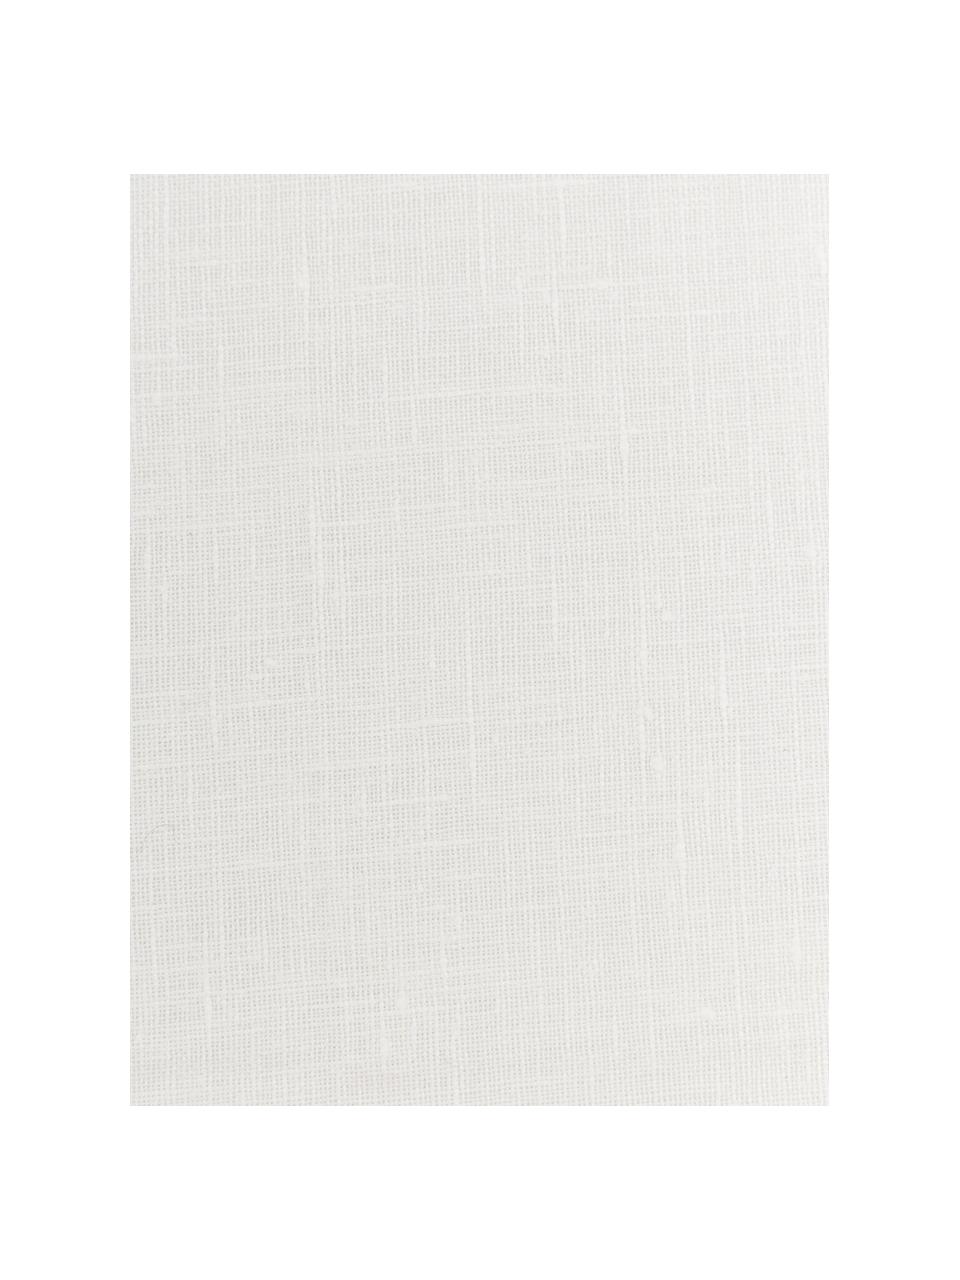 Serwetka z lnu Heddie, 2 szt., 100% len, Biały, S 45 x D 45 cm